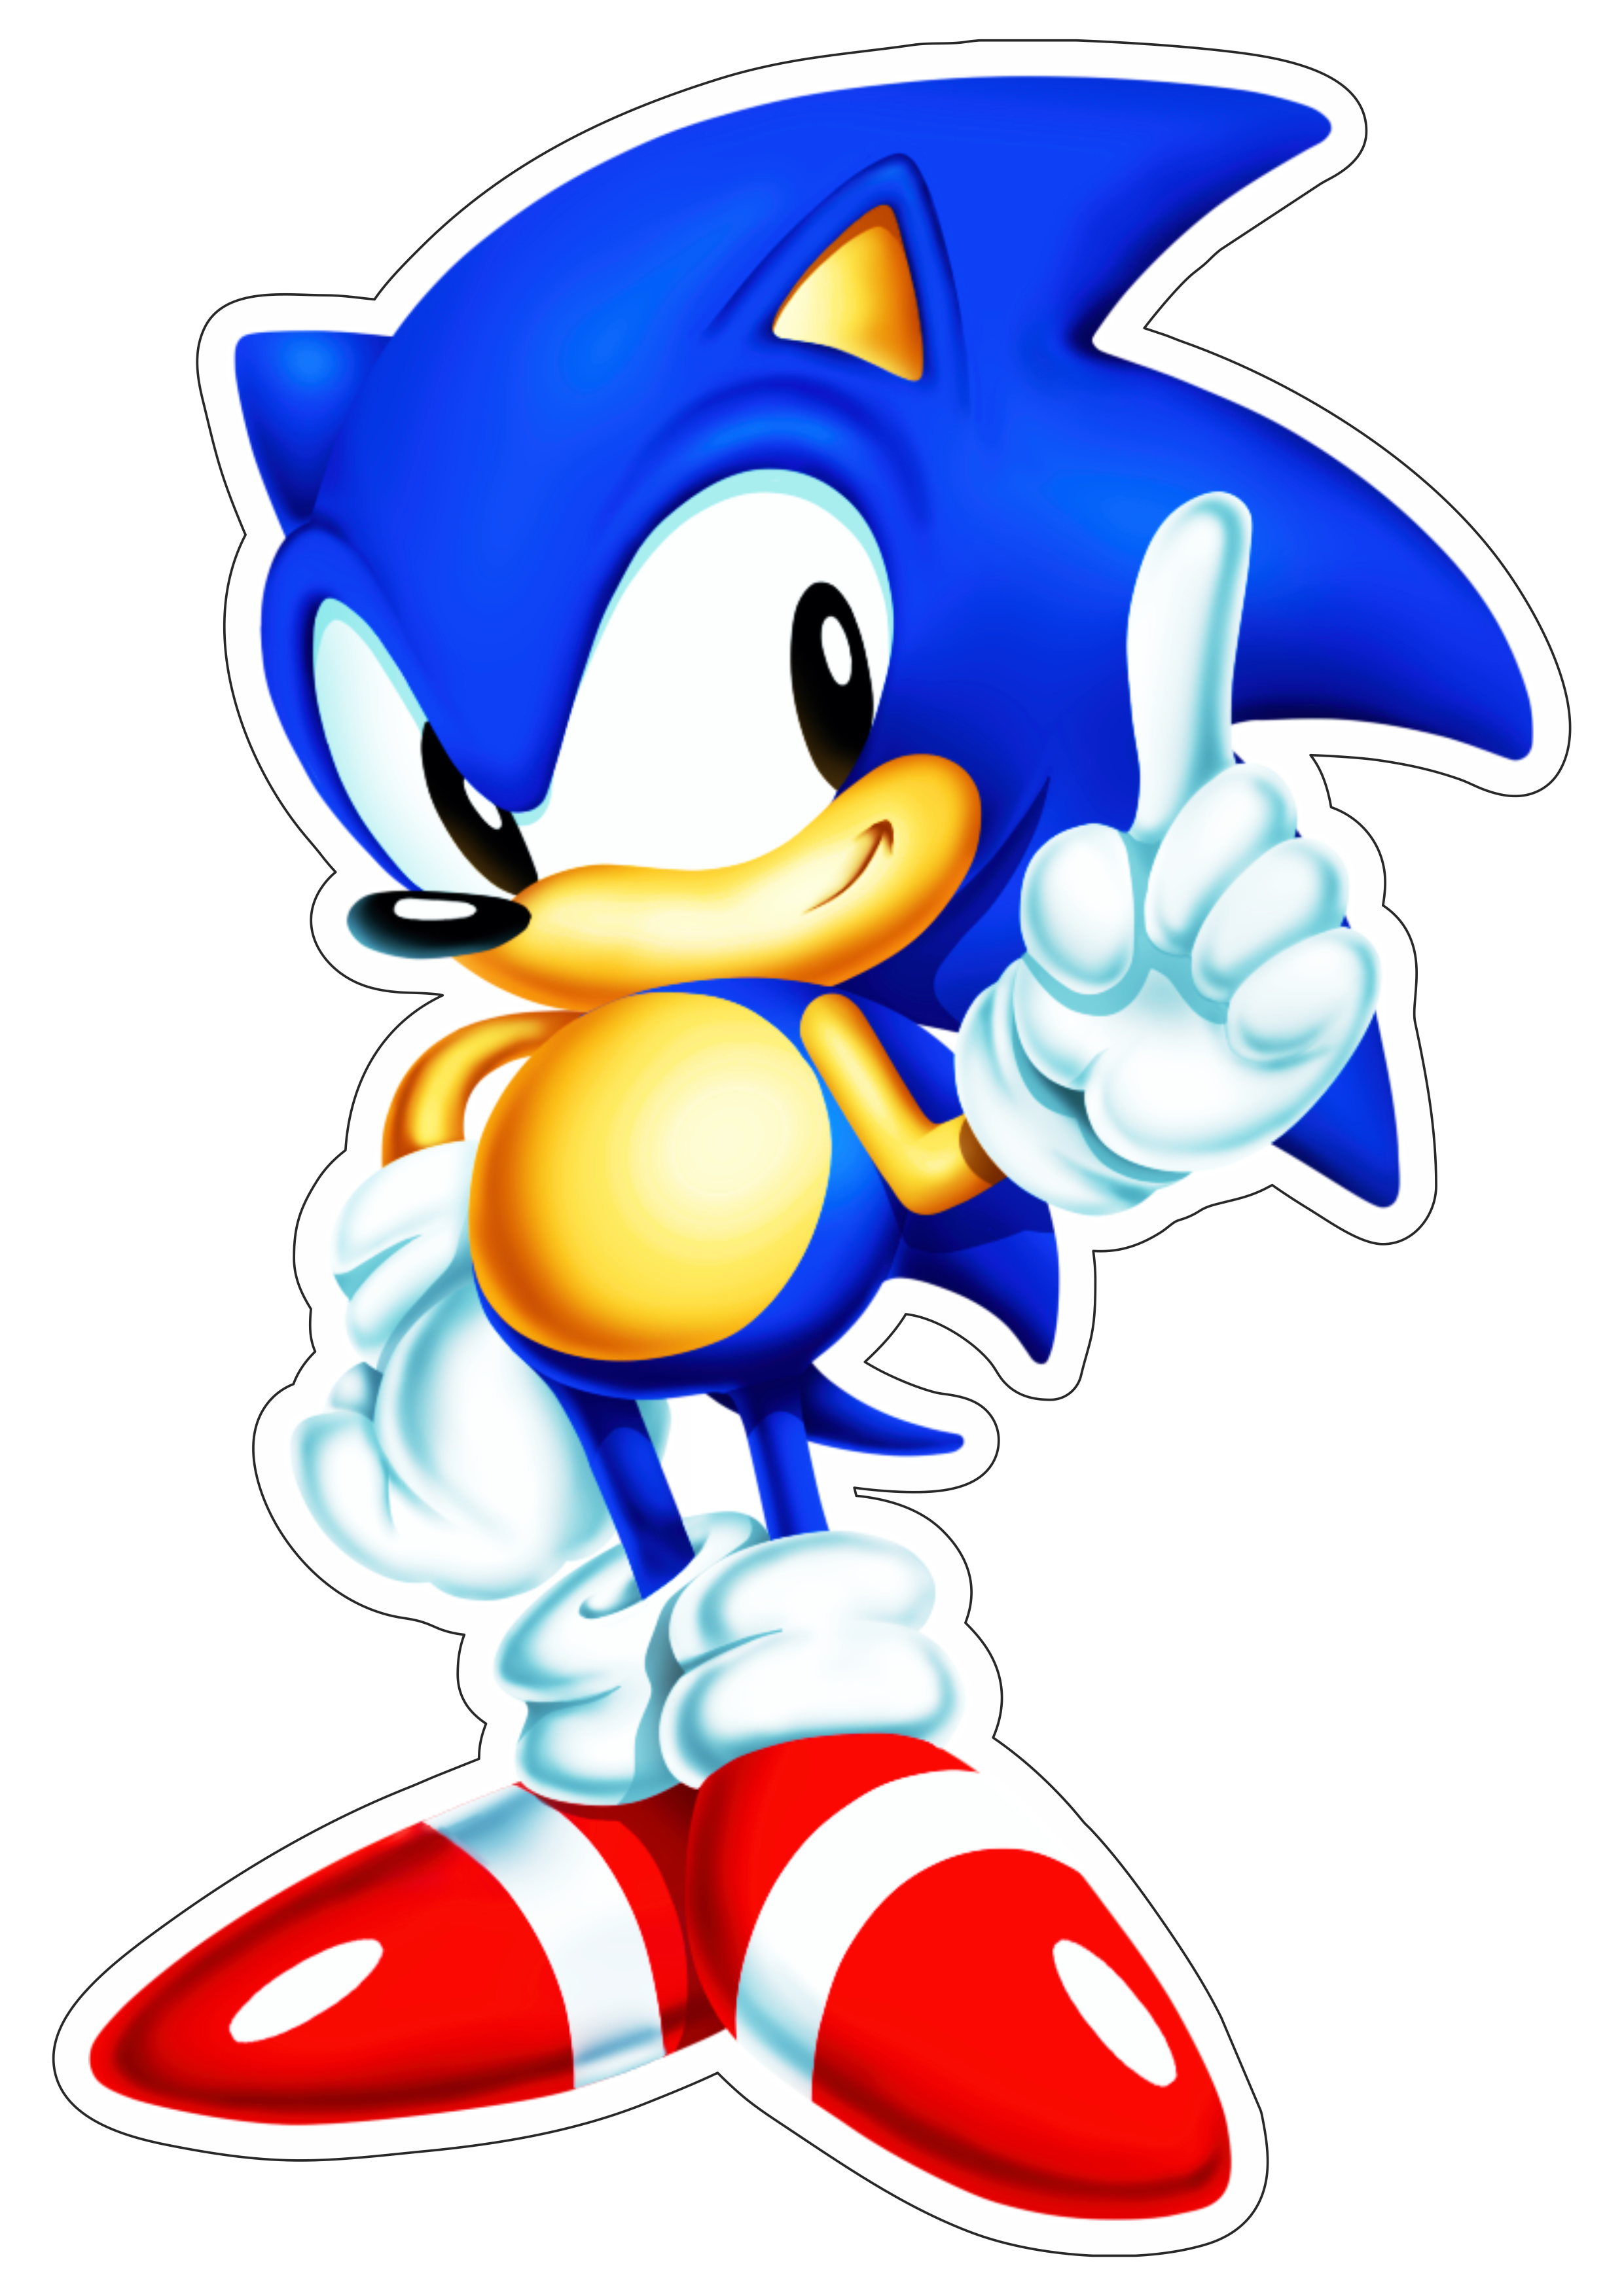 Sonic the hedgehog personagem de game imagem sem fundo png